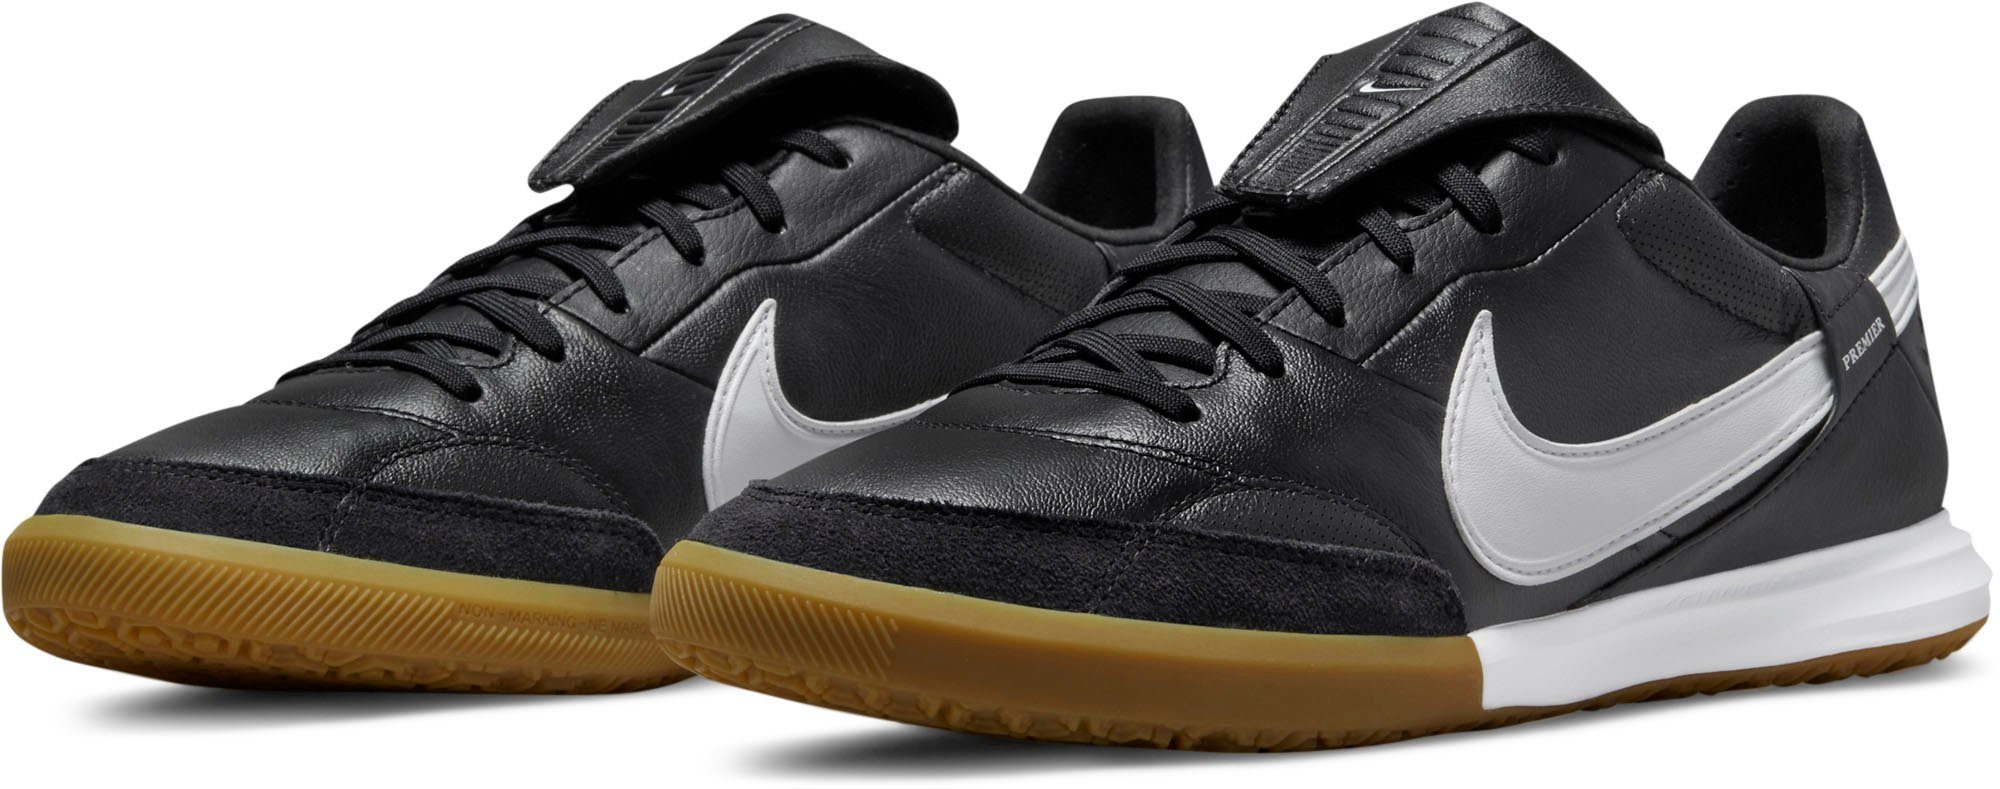 Nike Hallenfußballschuhe » Noppenschuhe online kaufen | OTTO